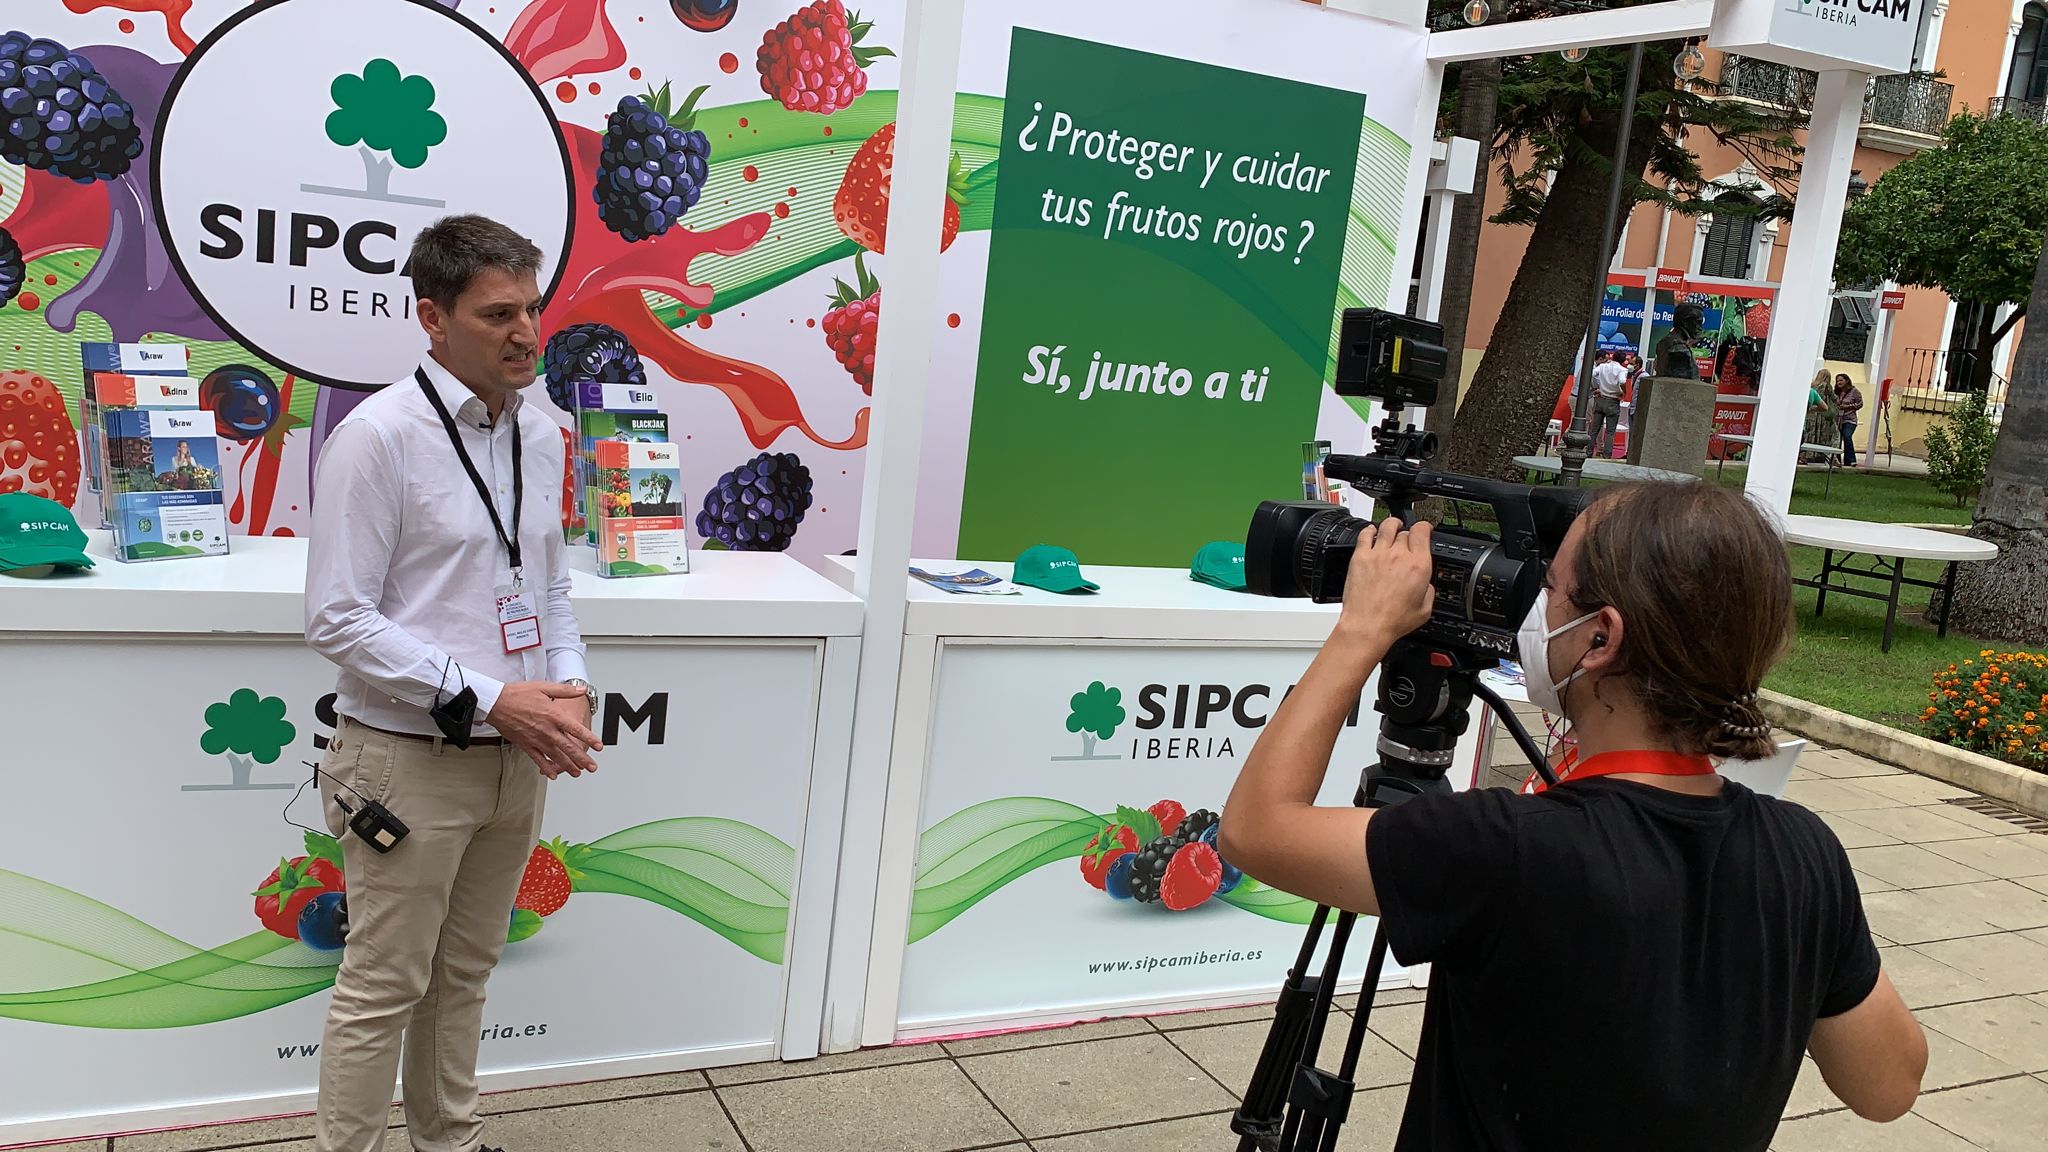 SIPCAM Iberia presenta en Huelva el biofungicida Araw para berries